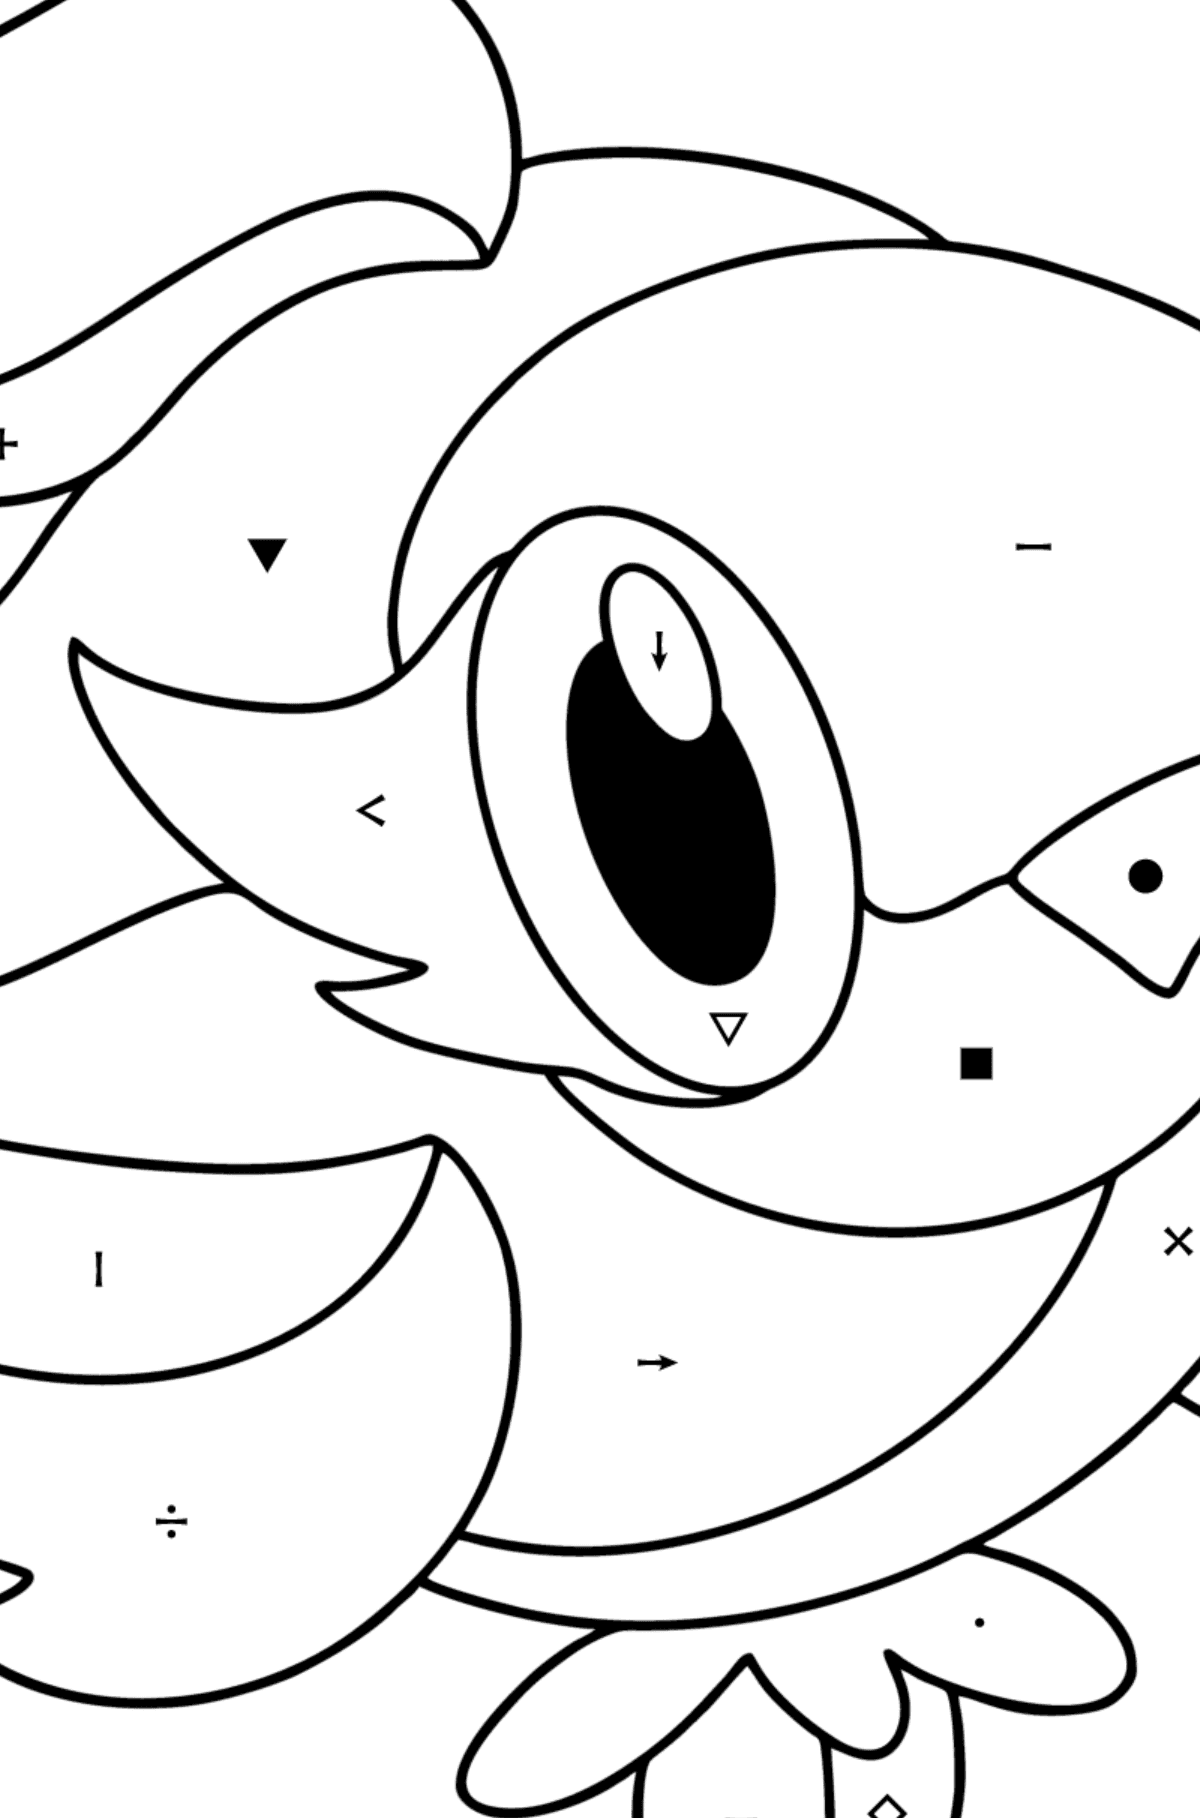 Dibujo de Pokémon XY Spritzee para colorear - Colorear por Símbolos para Niños